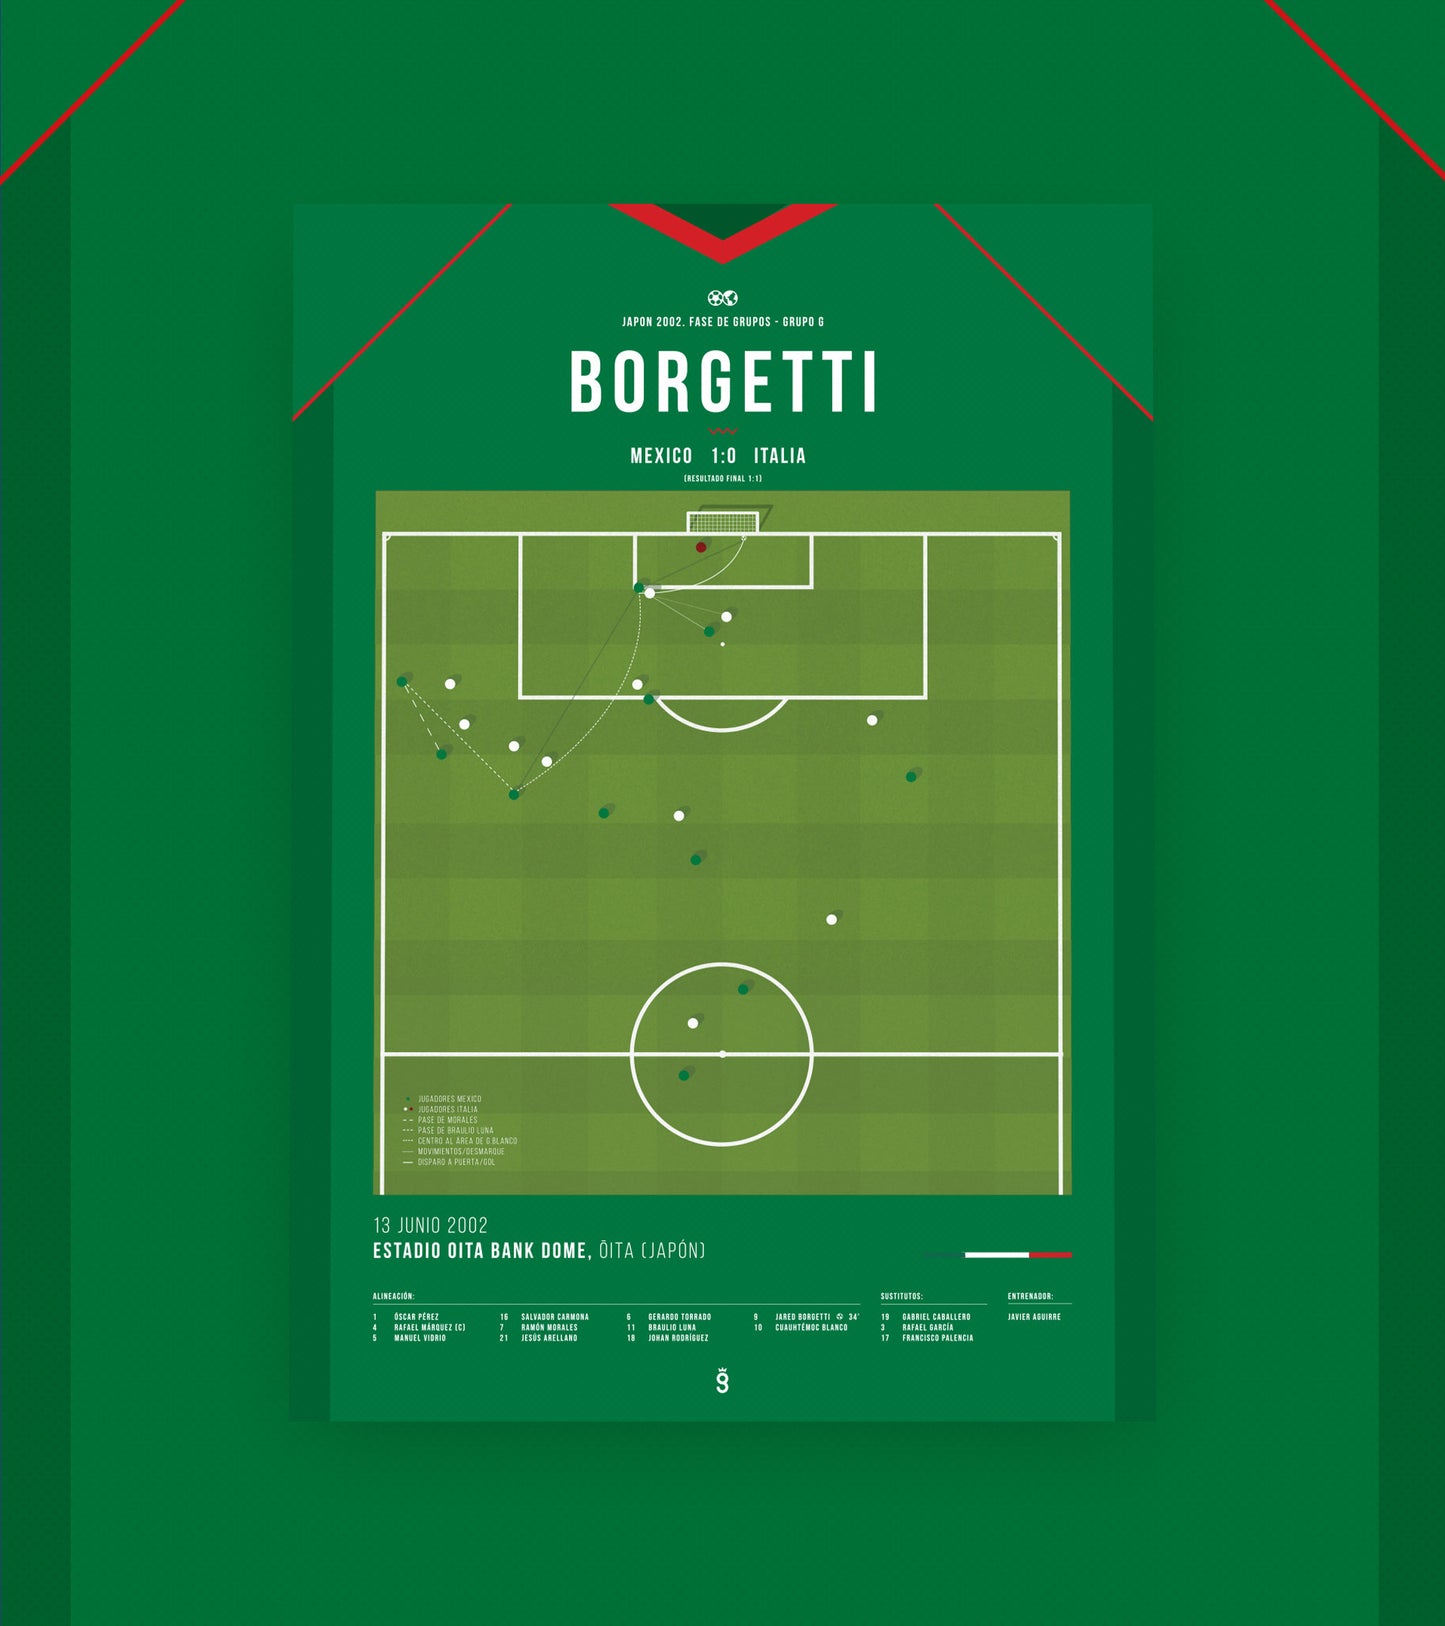 Jared Borgetti amazing header goal vs Italia